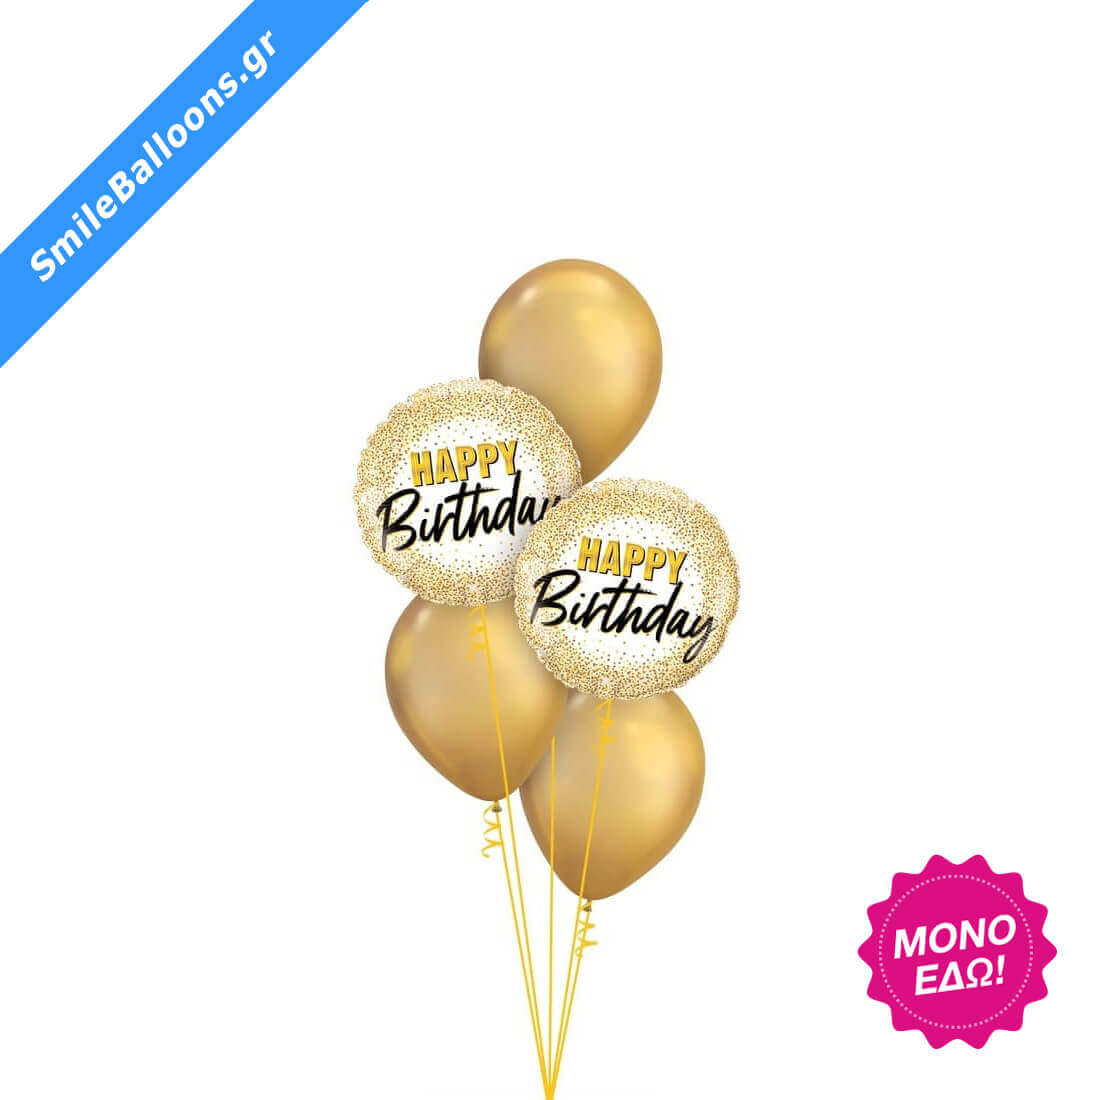 Μπουκέτο μπαλονιών "Glamorous Golden Birthday"